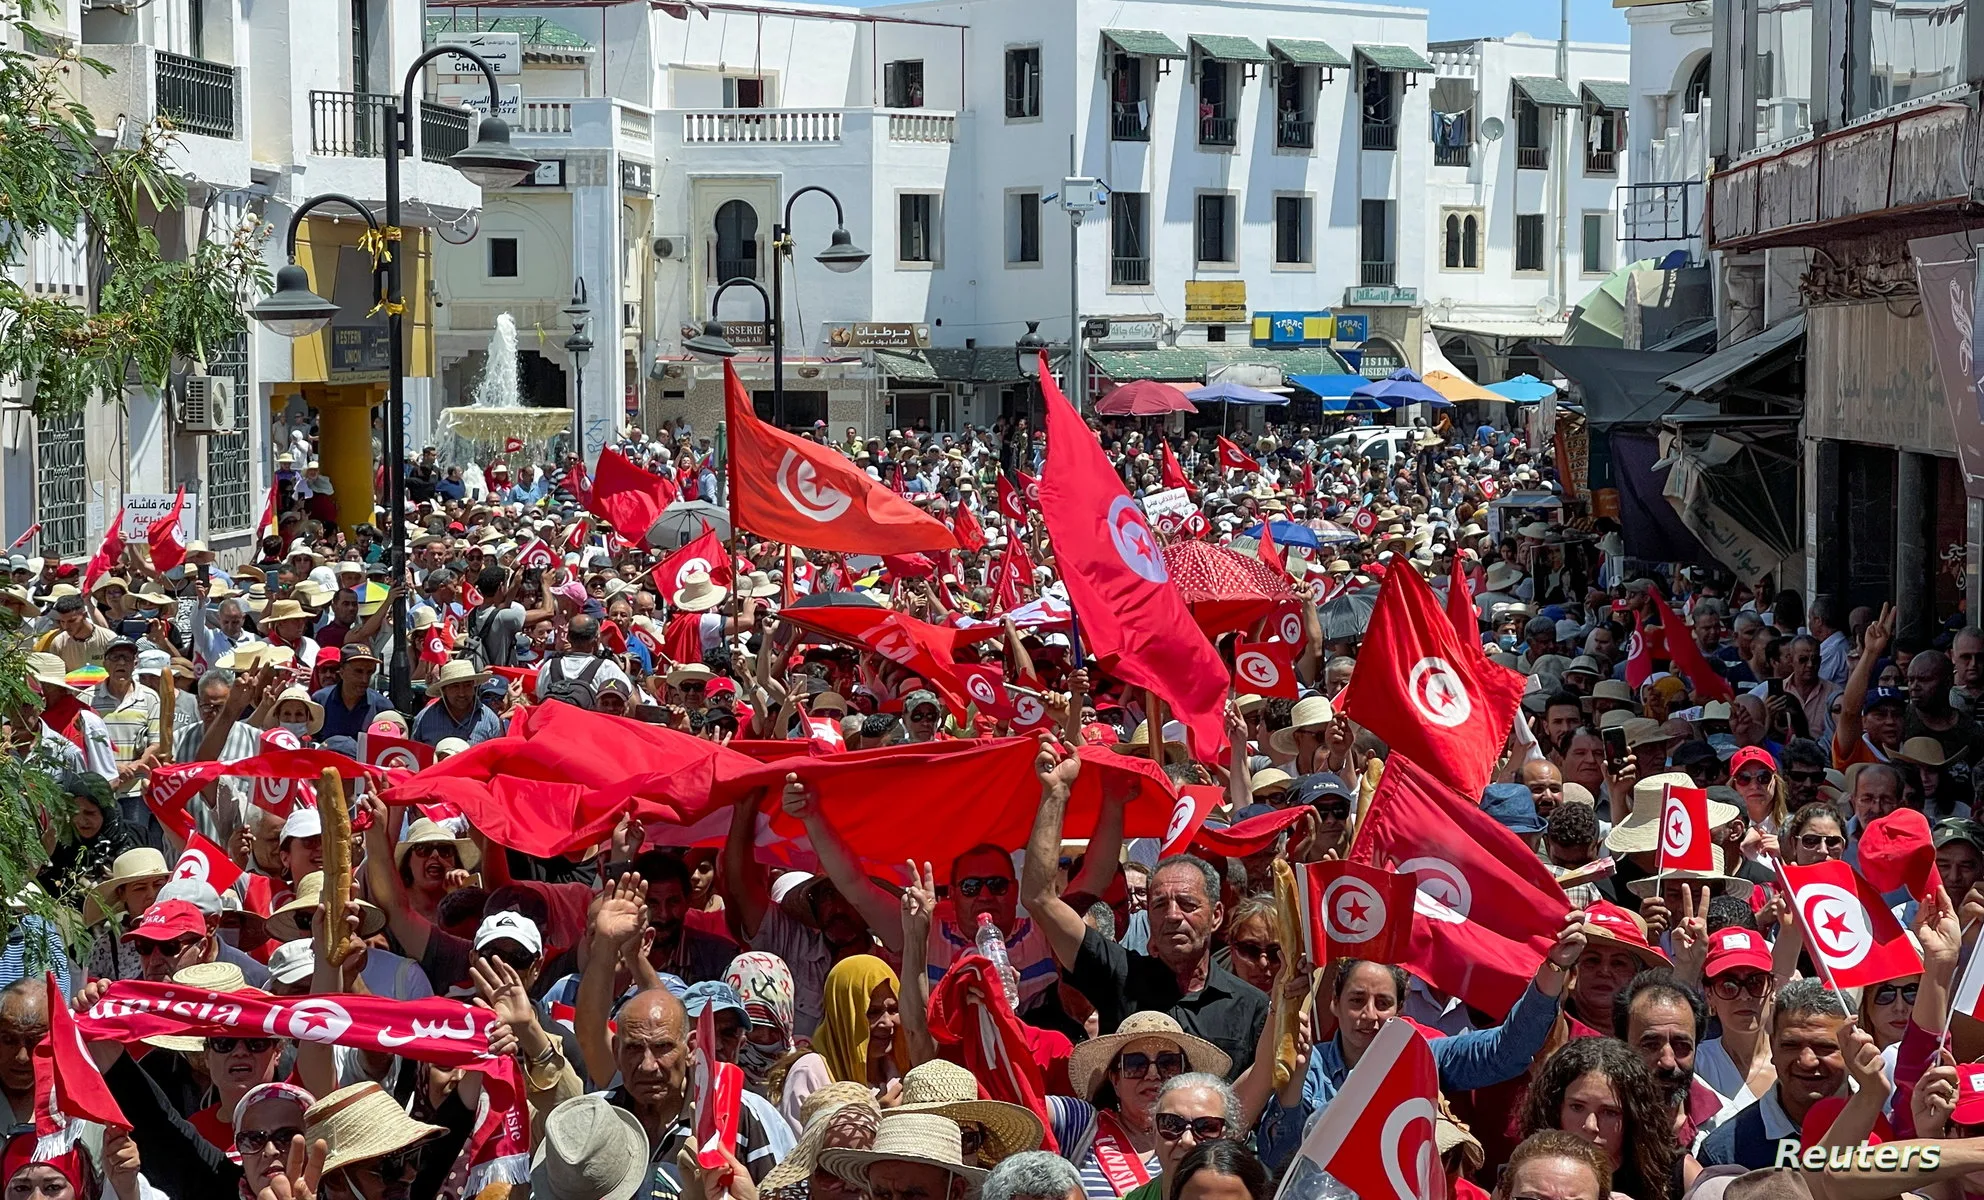 2022-06-18T133307Z_2012934932_RC2AUU9OH1WD_RTRMADP_3_TUNISIA-POLITICS-PROTESTS